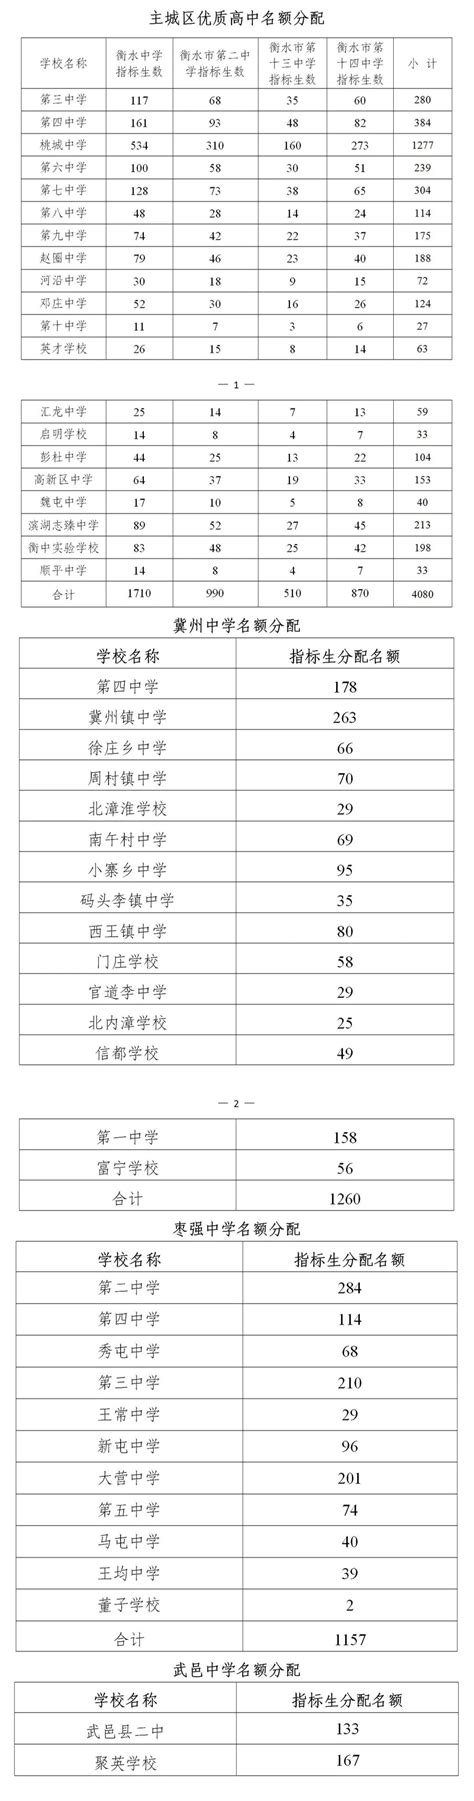 邯郸中考分数线2021年最新公布 邯郸中考分数线2021年公布时间